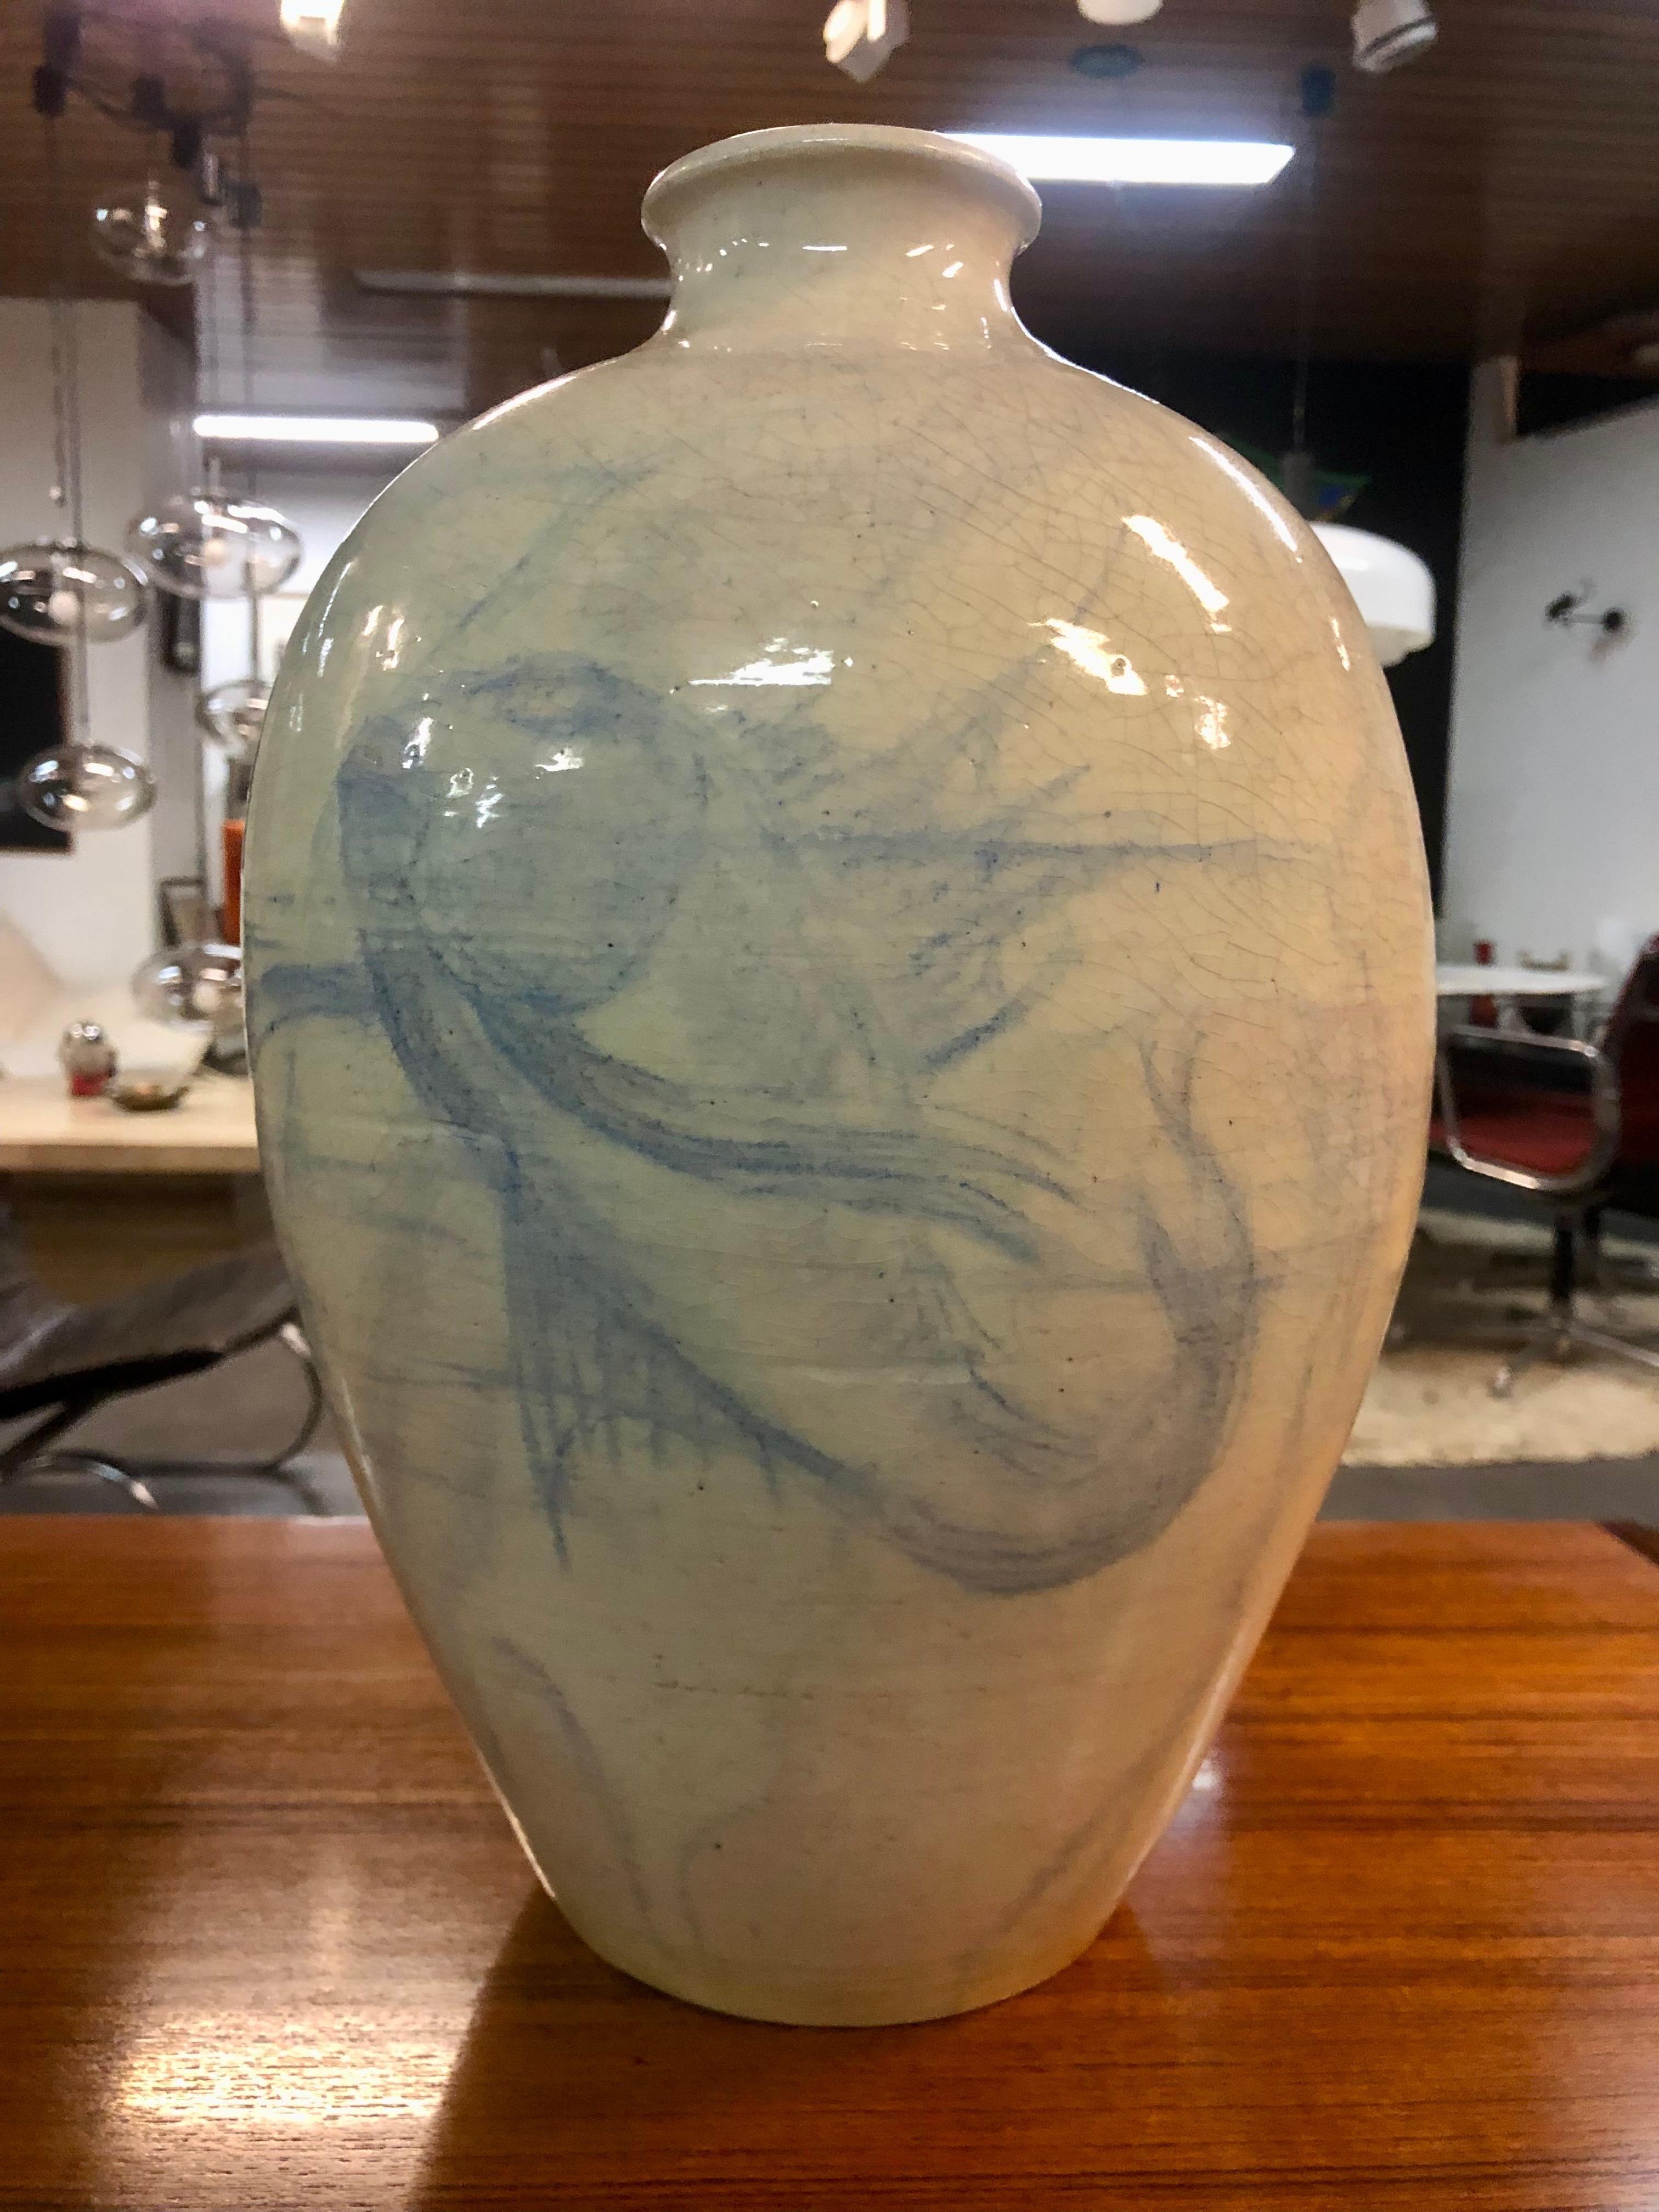 Diese außergewöhnliche Keramikvase, eine Collaboration der beiden Keramikmeister Edmond Lachenal und Félix Fevola, ist ein wahres Zeugnis ihres künstlerischen Könnens. Die Vase ist aus makellos weißer Keramik gefertigt und zeigt ein exquisites,